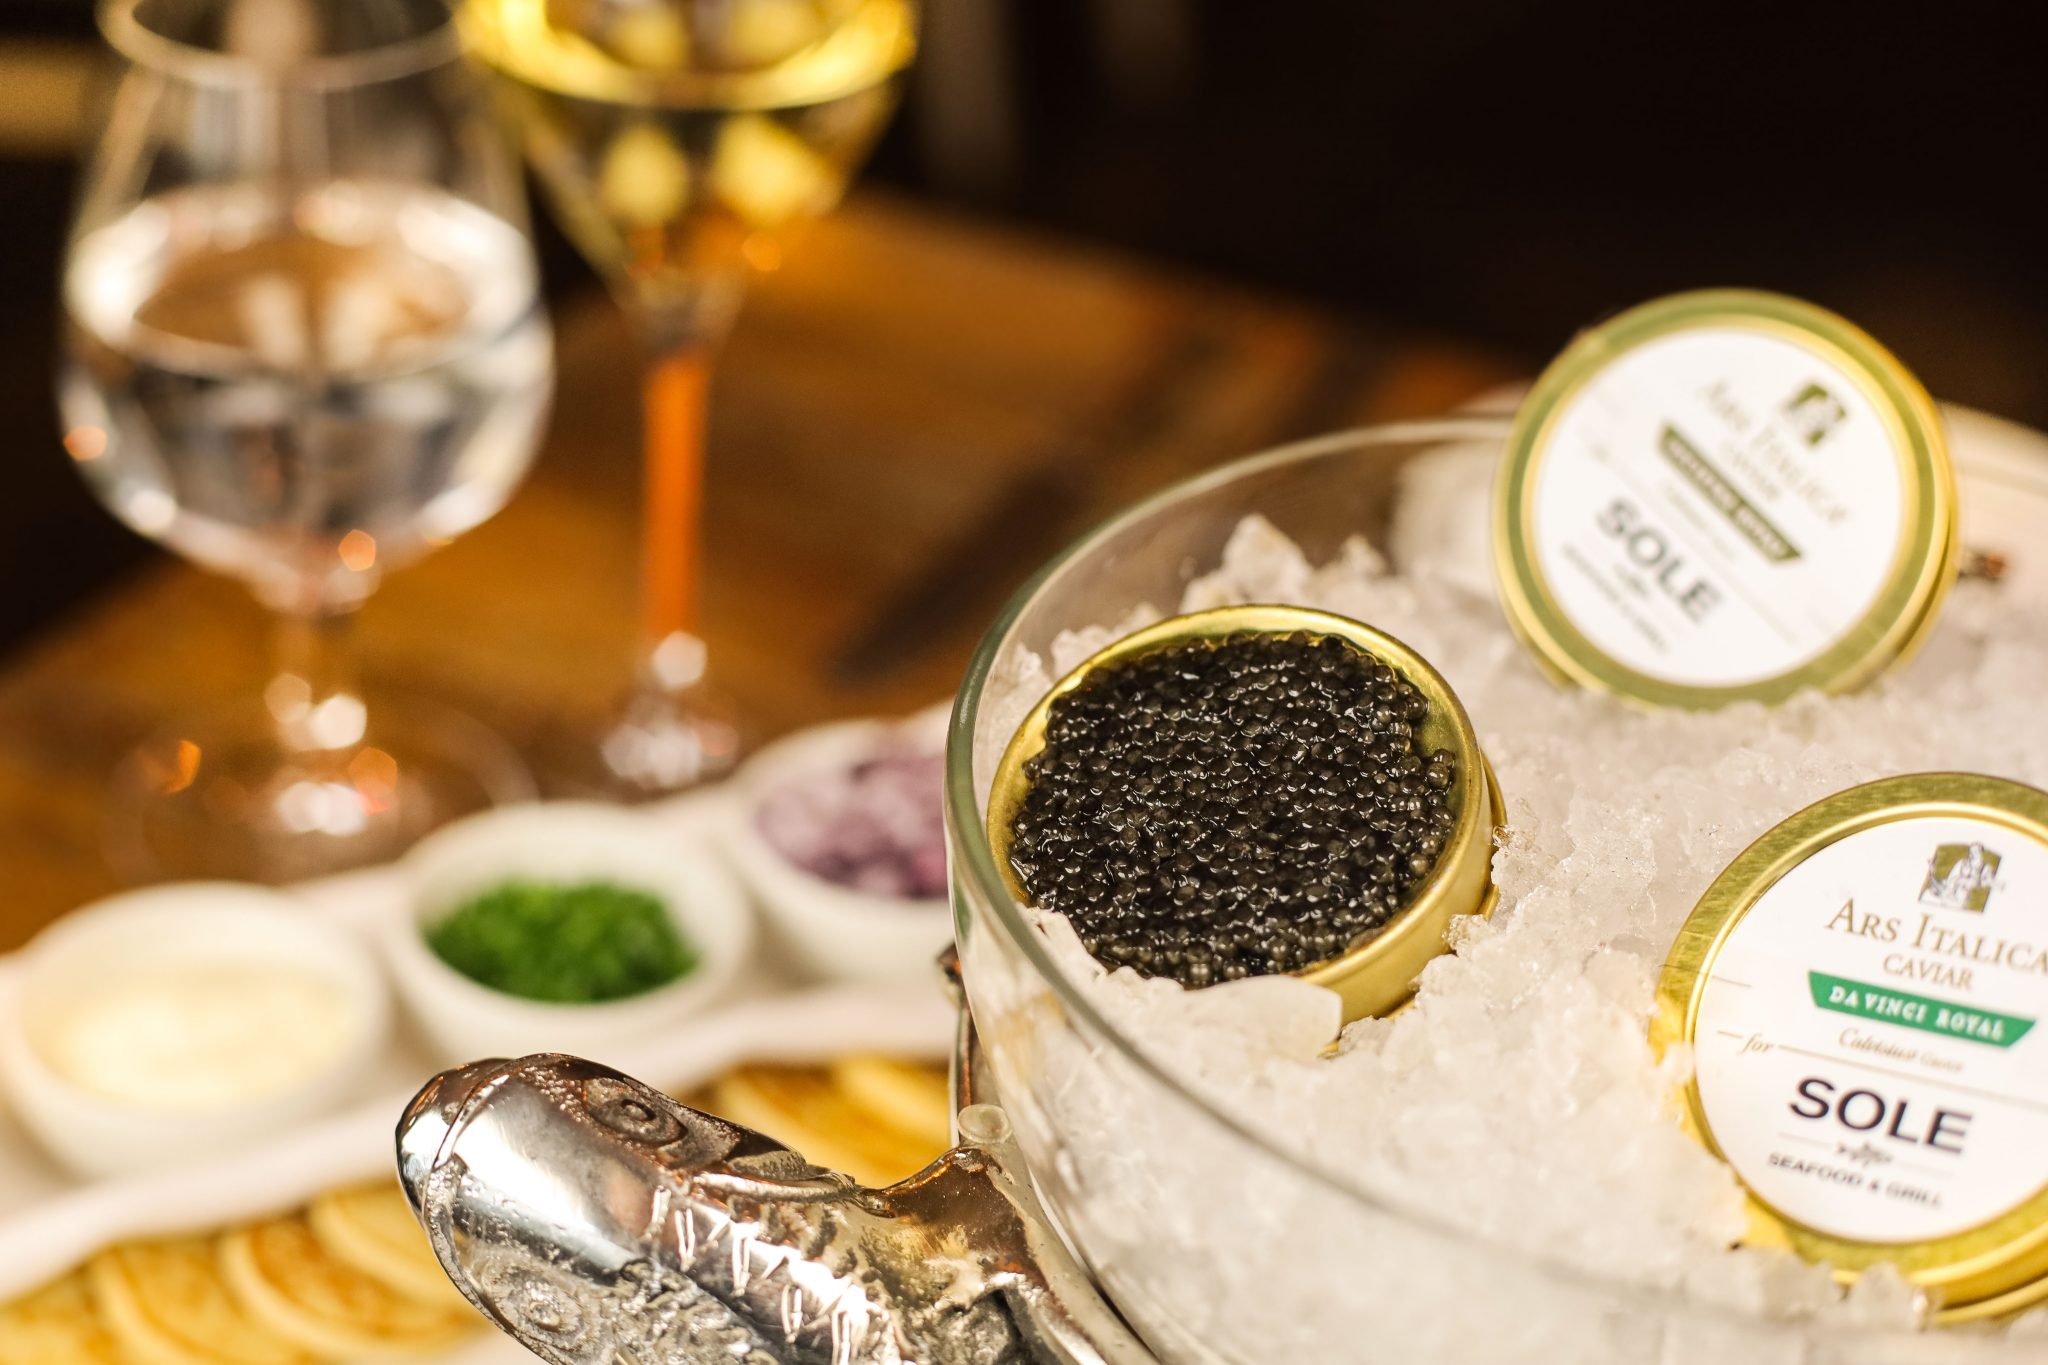 Calvisius Caviar Experience at SOLE